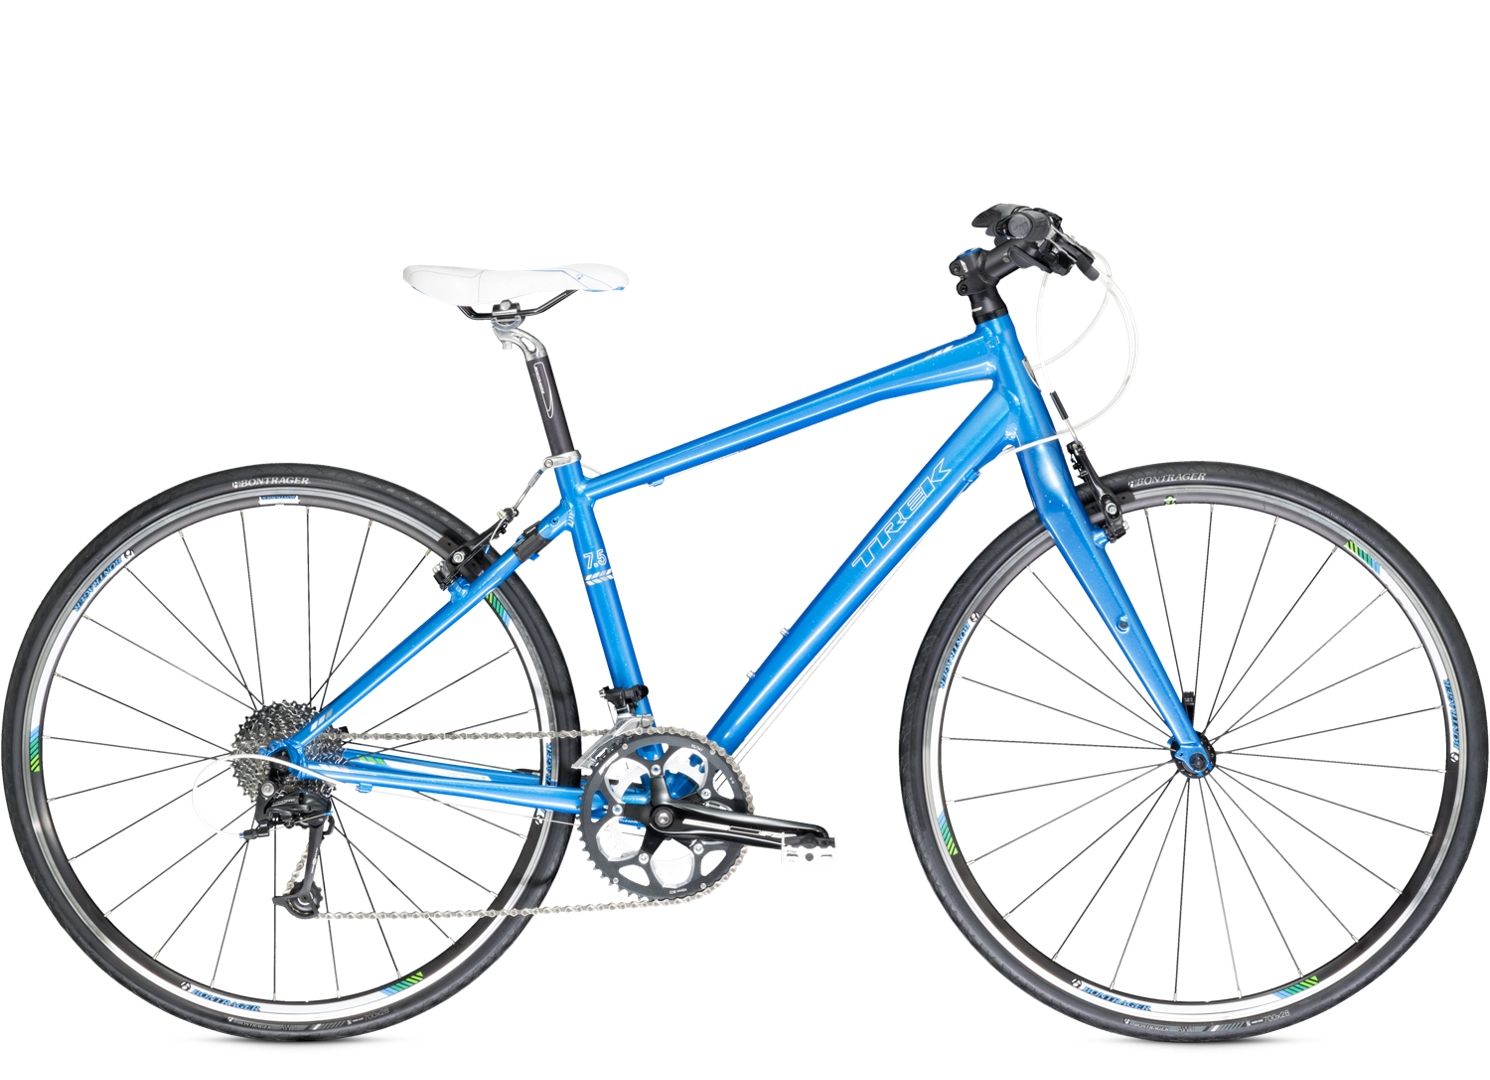  Велосипед Trek 7.5 FX WSD 2014